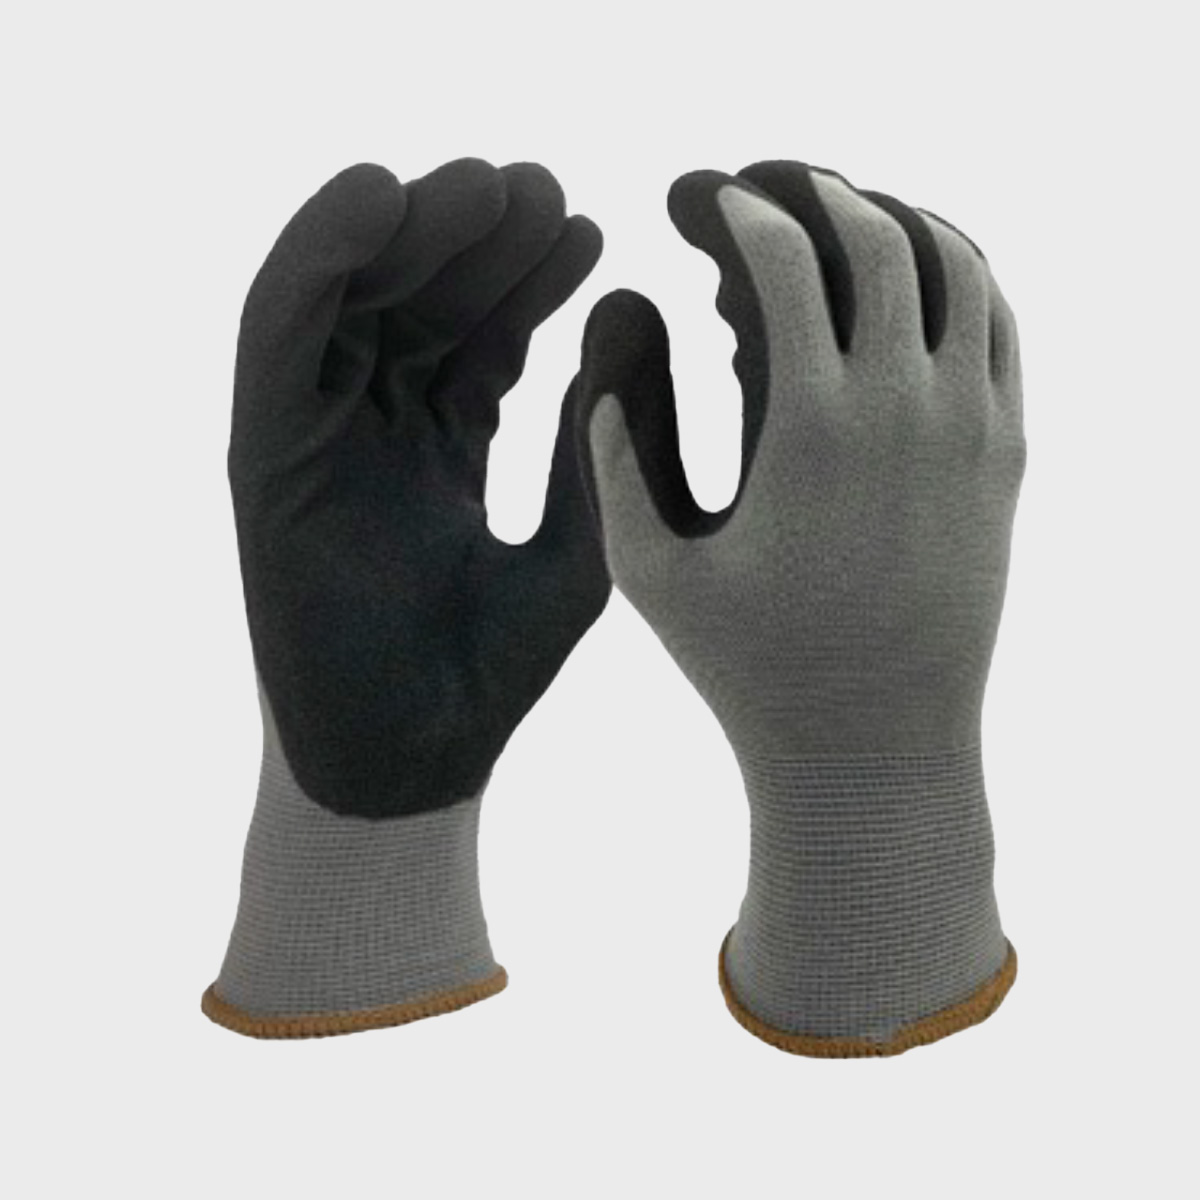 Gants 100% polyamide texturé noir,tricot - Gants de Manutention lourde -  Somatico